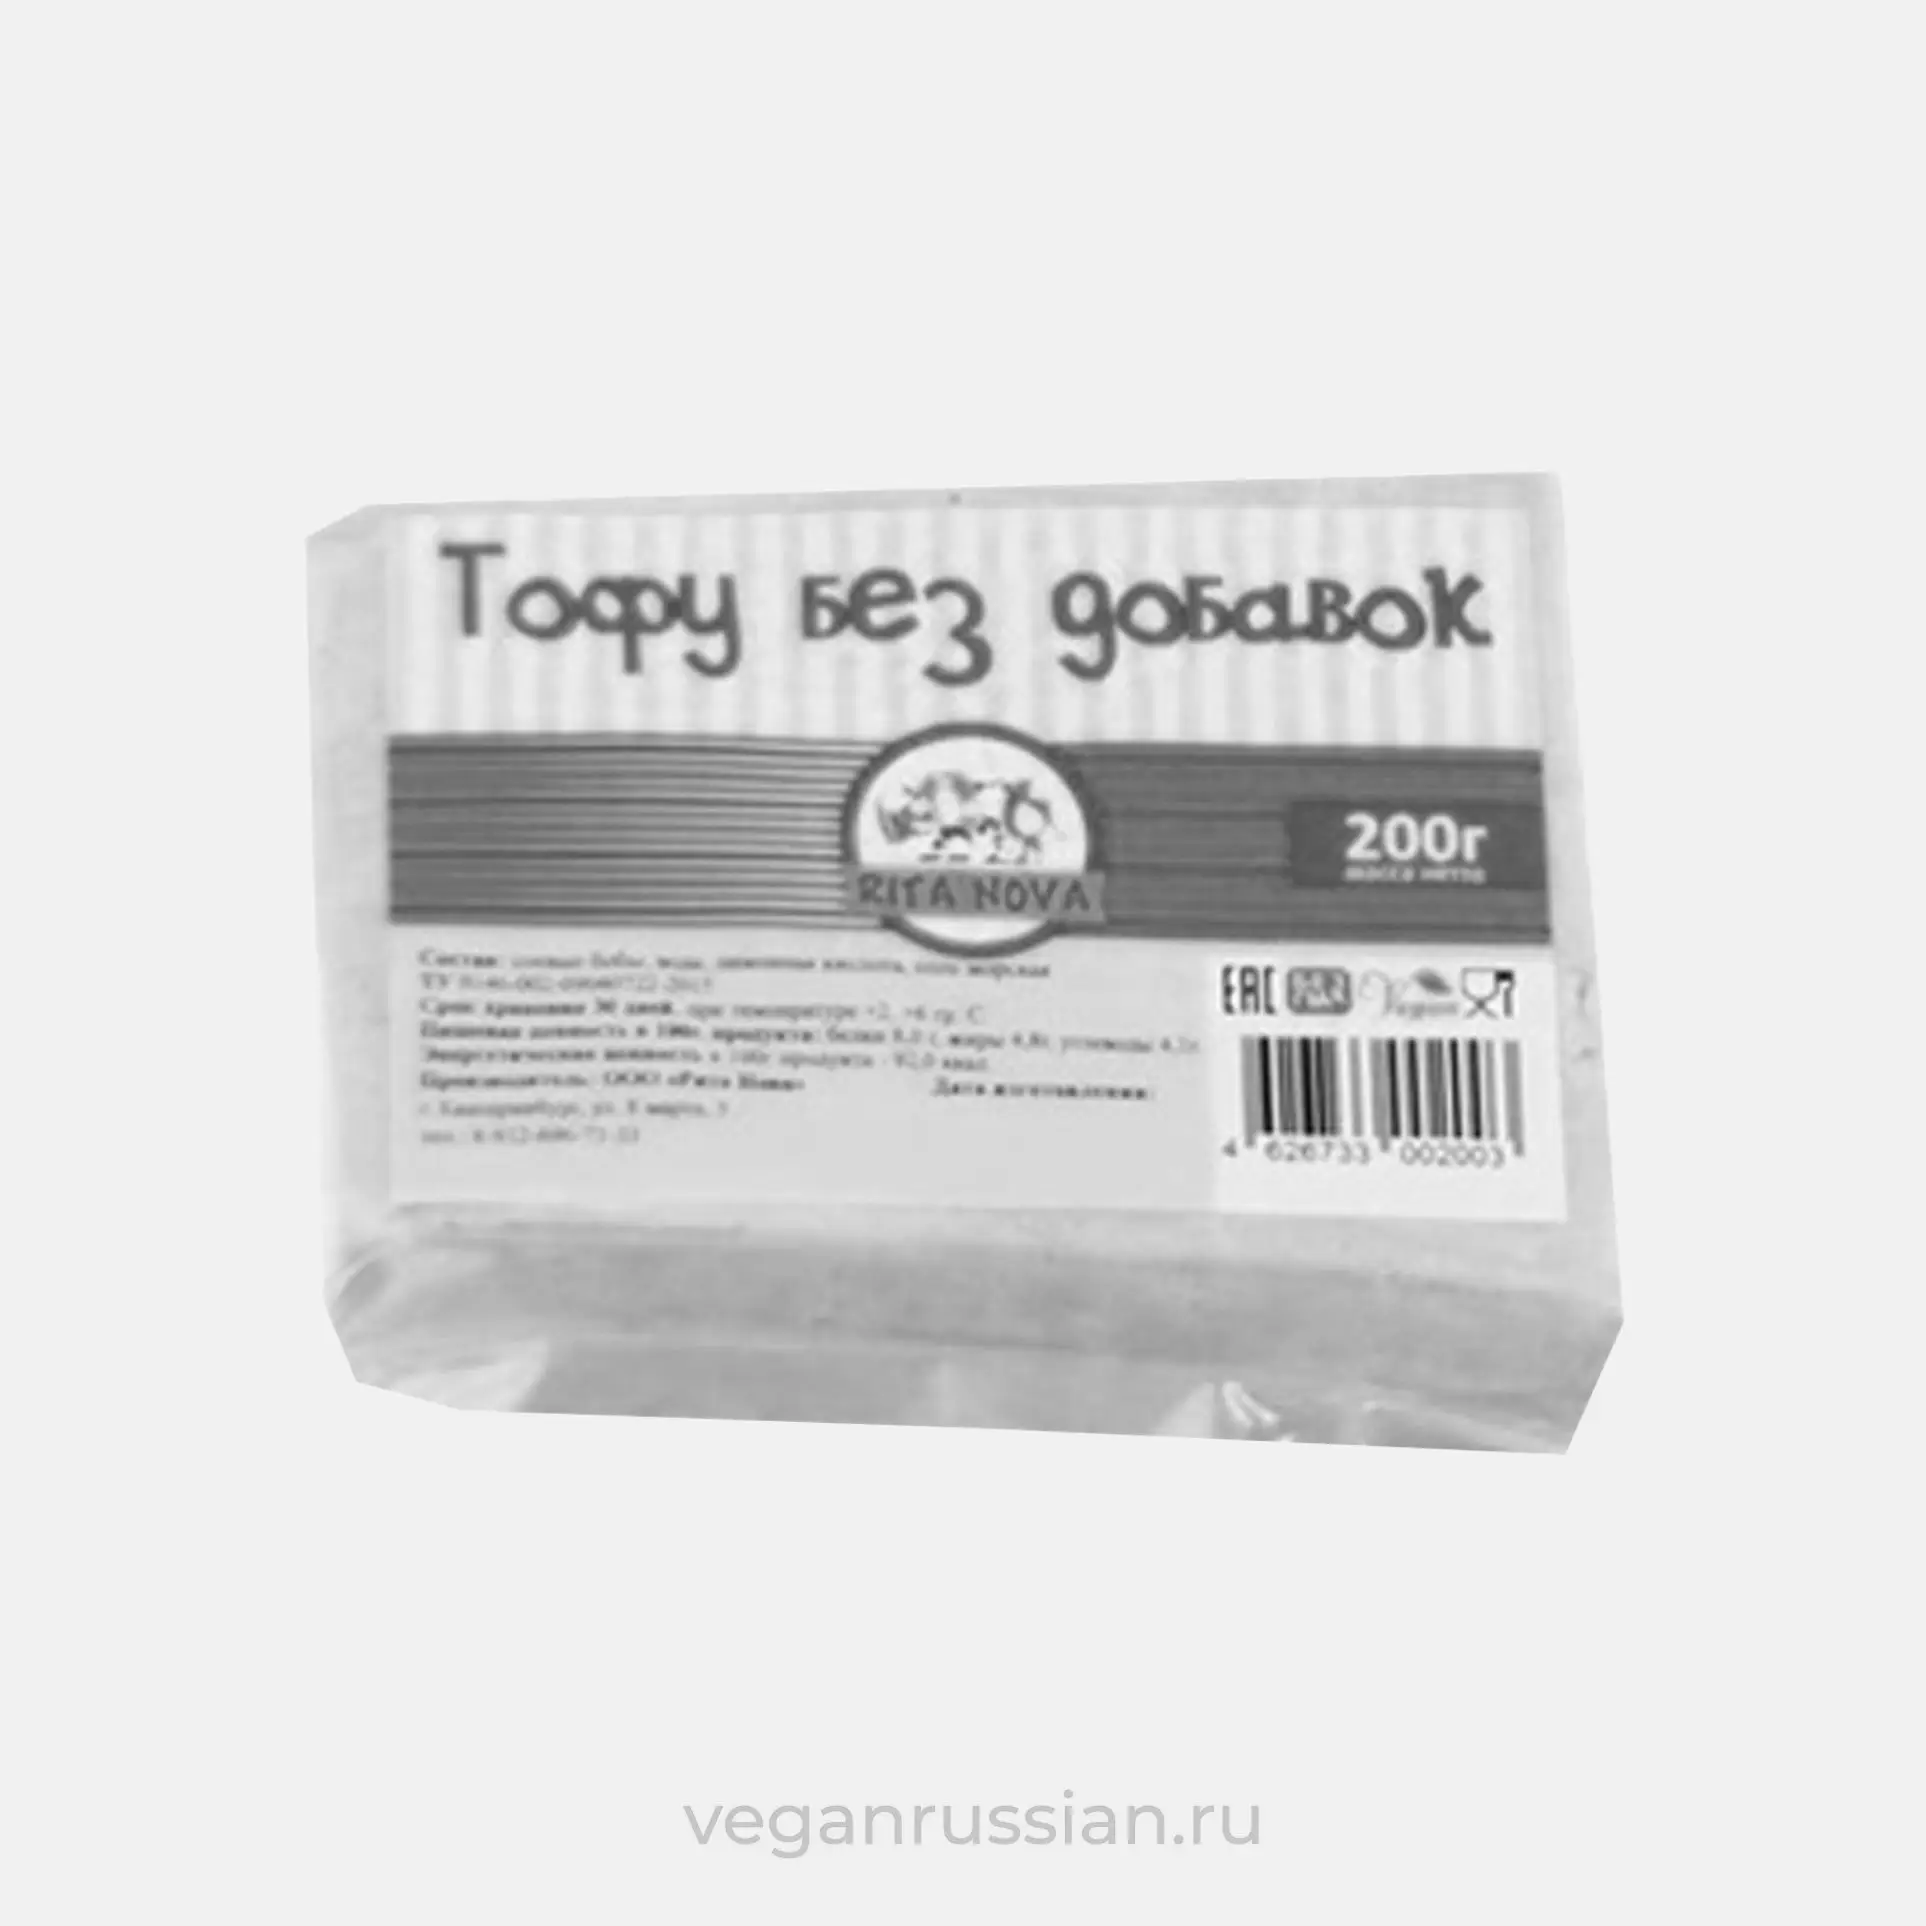 Архив: Тофу без добавок Вегетеринбург 200 г